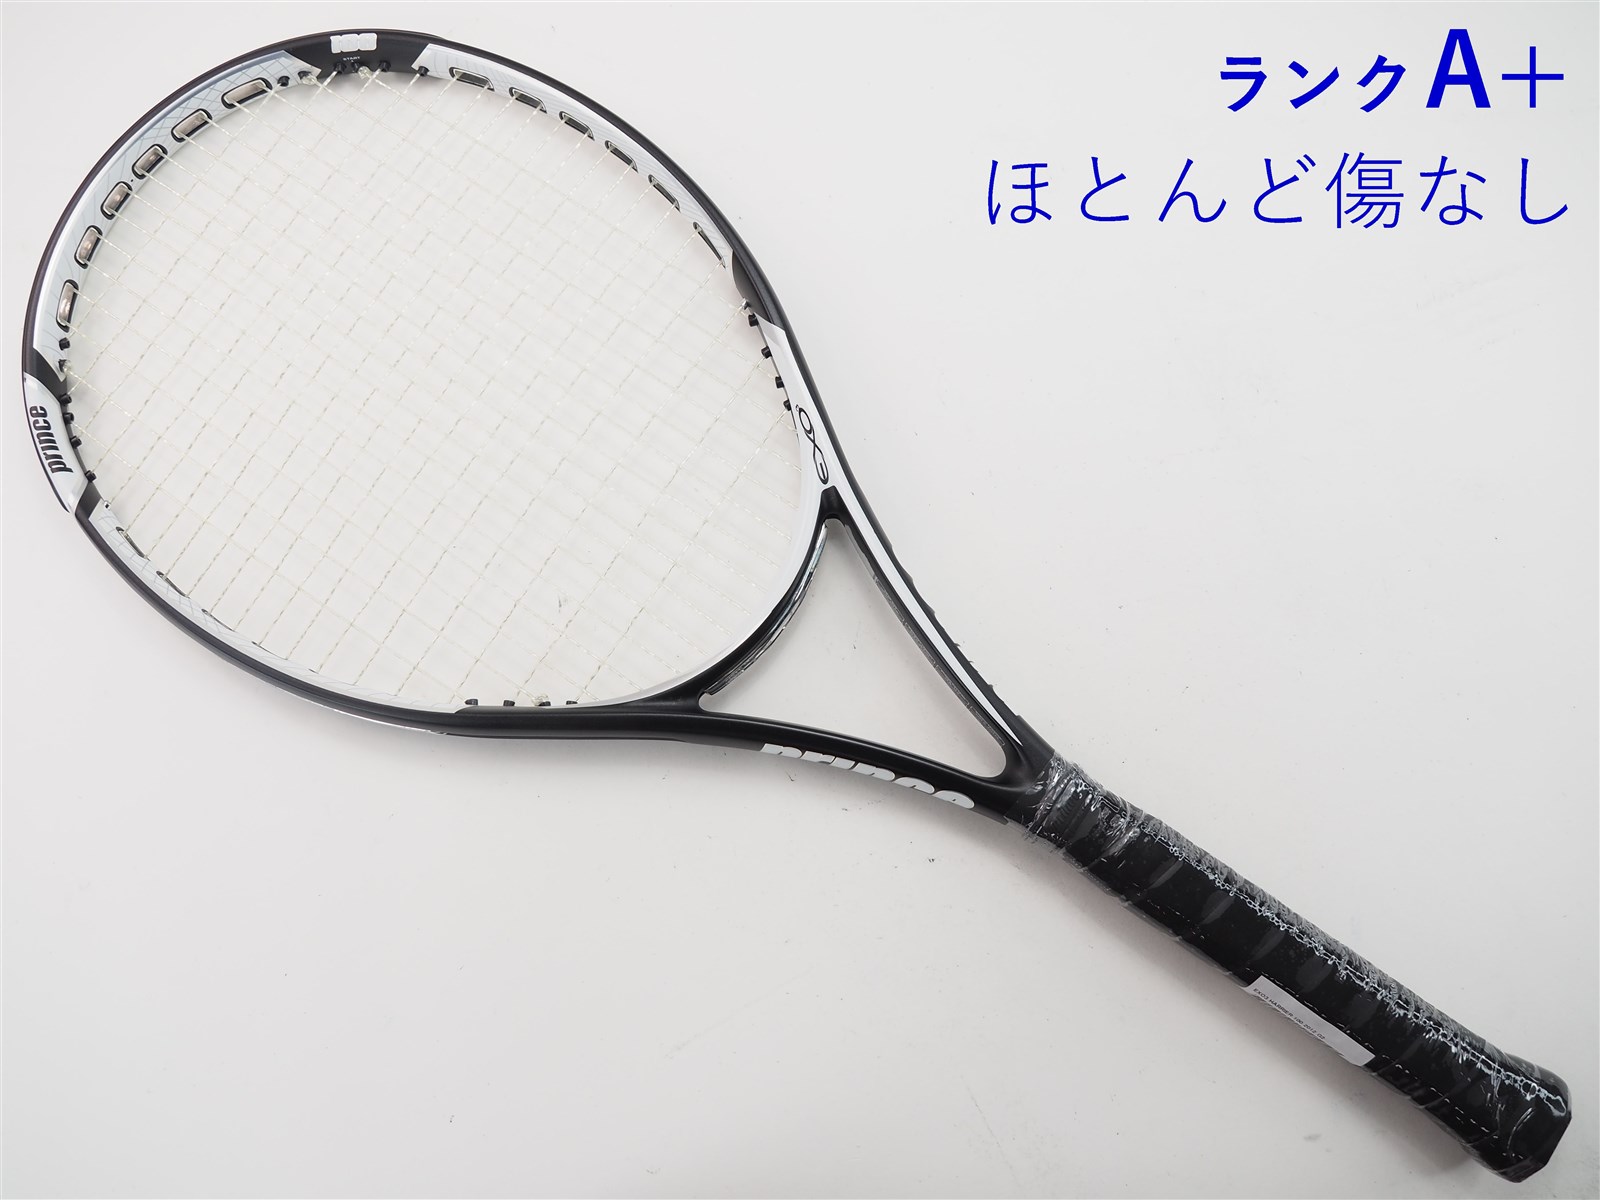 テニスラケット プリンス ハリアー プロ 107 エックスアール 2015年